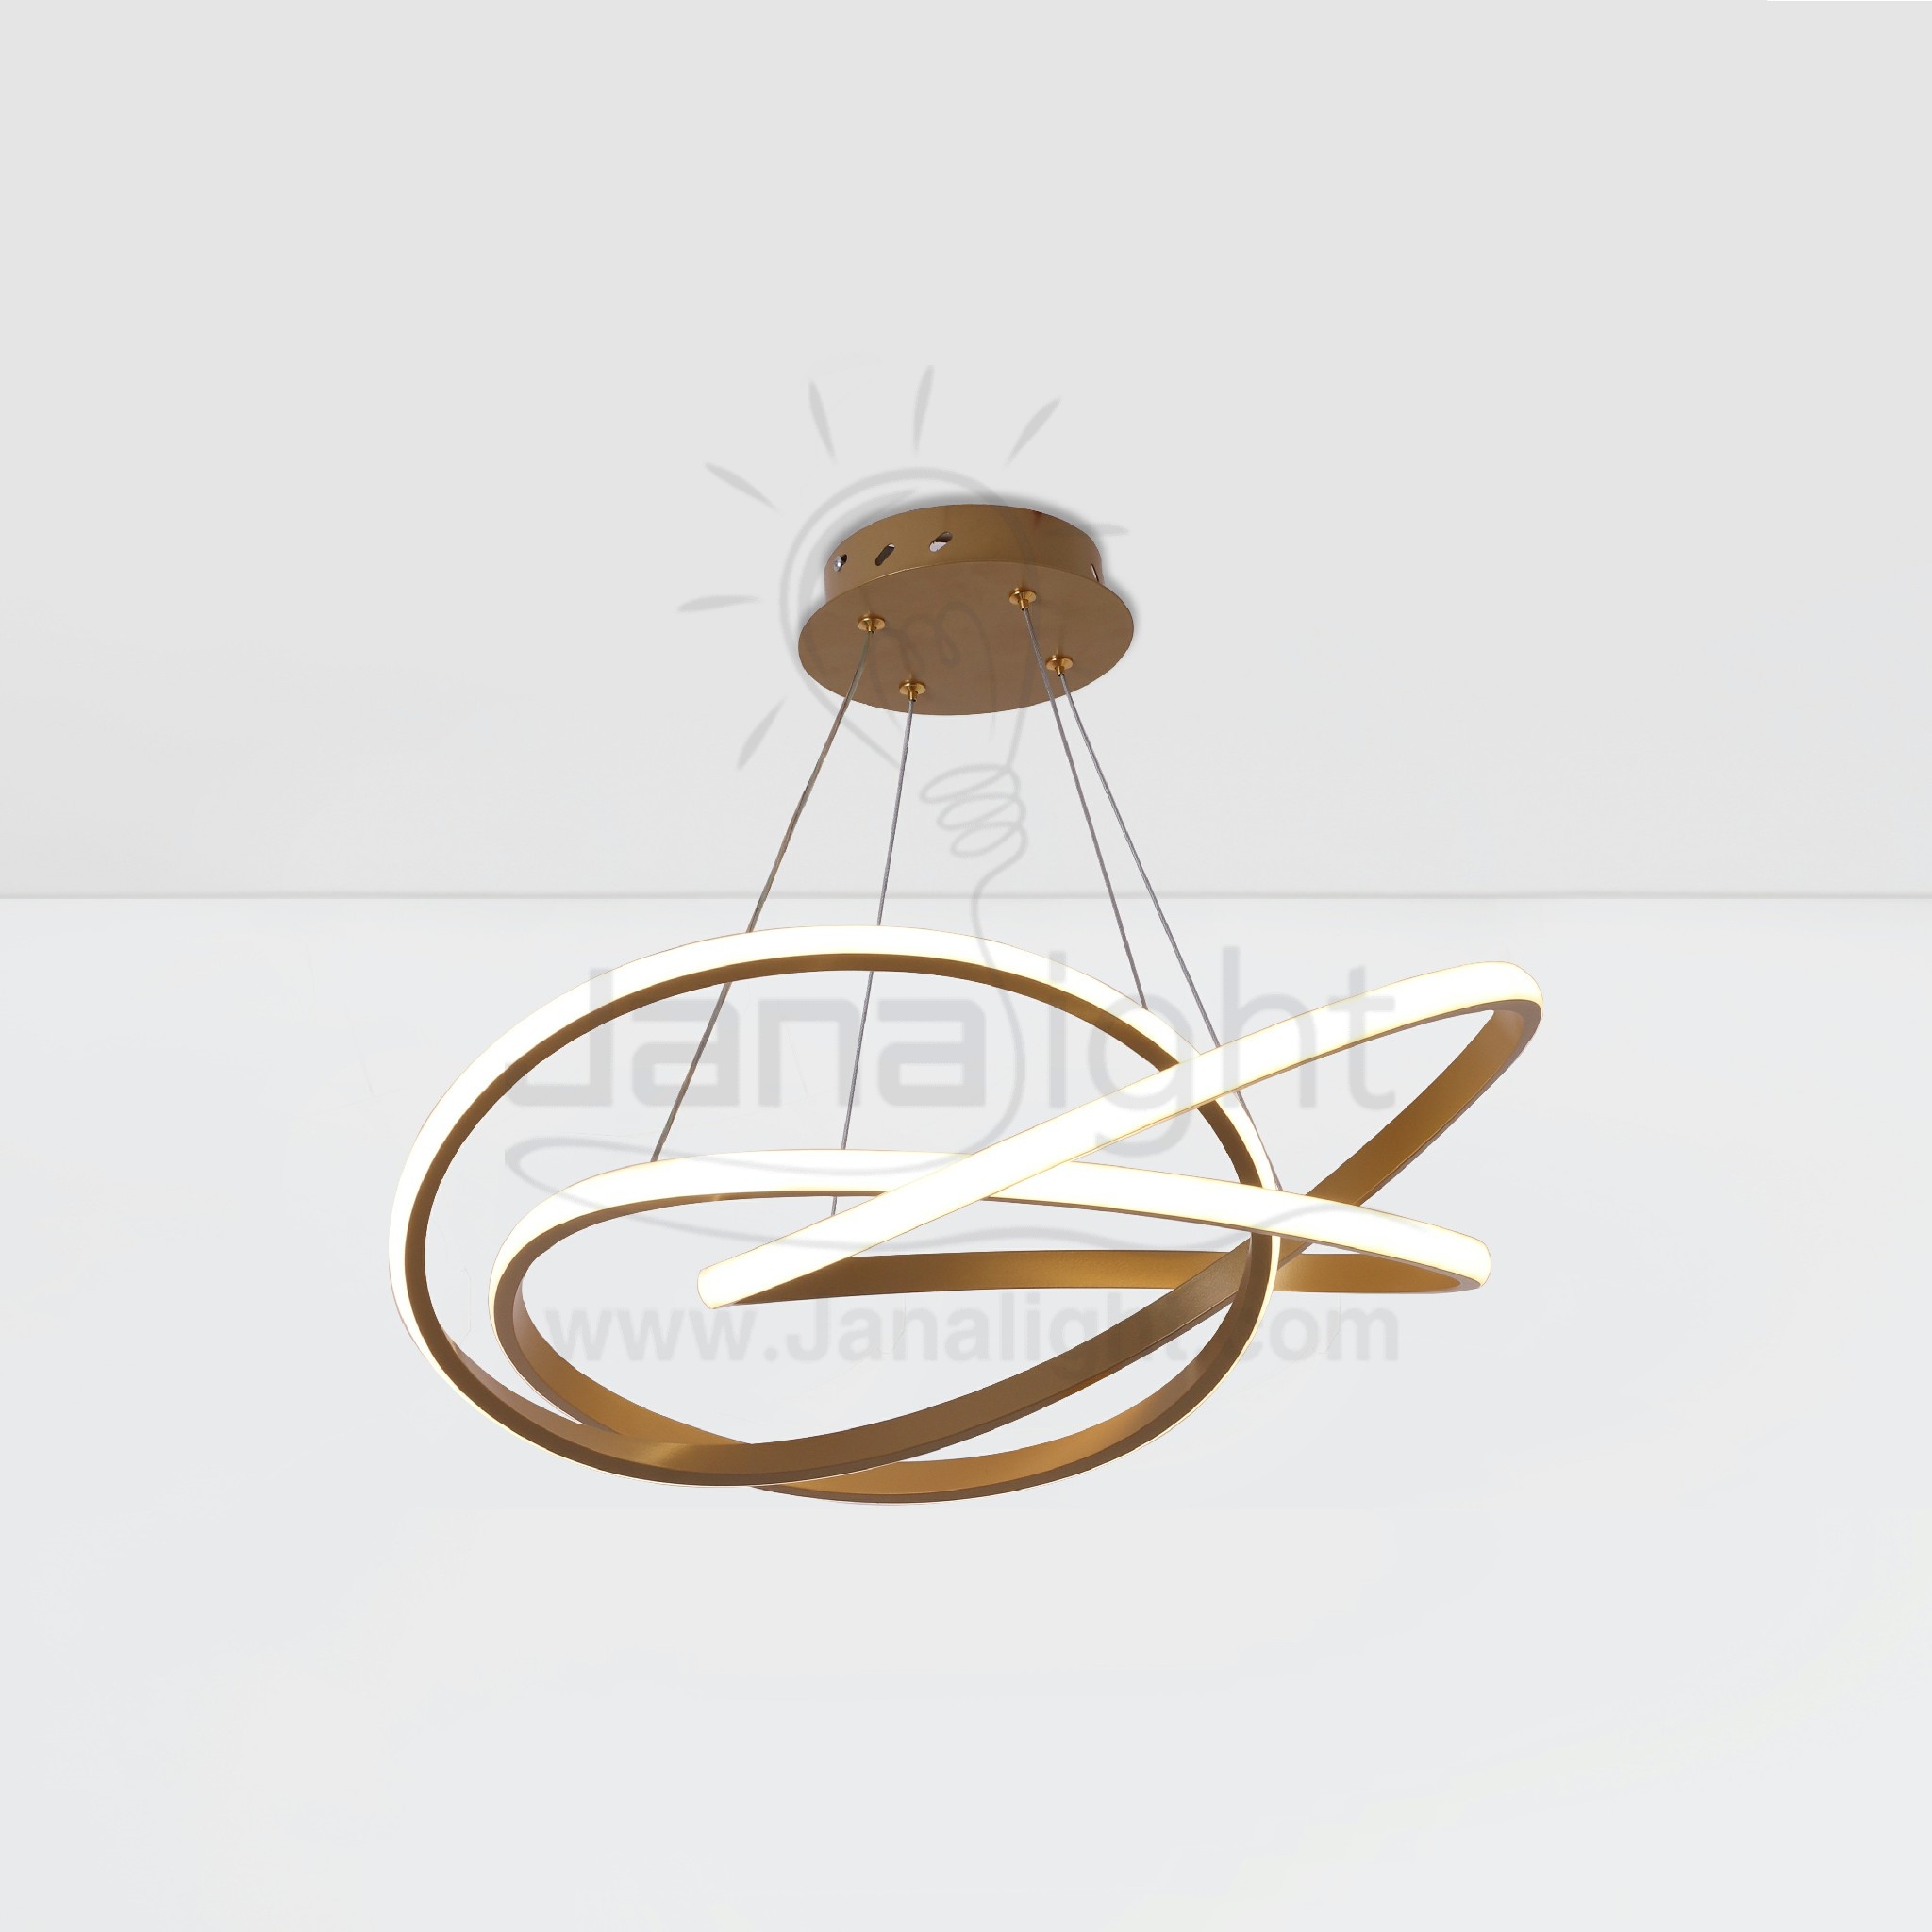 دلاية ليد رش بشكل نجمة رباعية Modern luminaire hanglamp ceiling pendant led rings circle